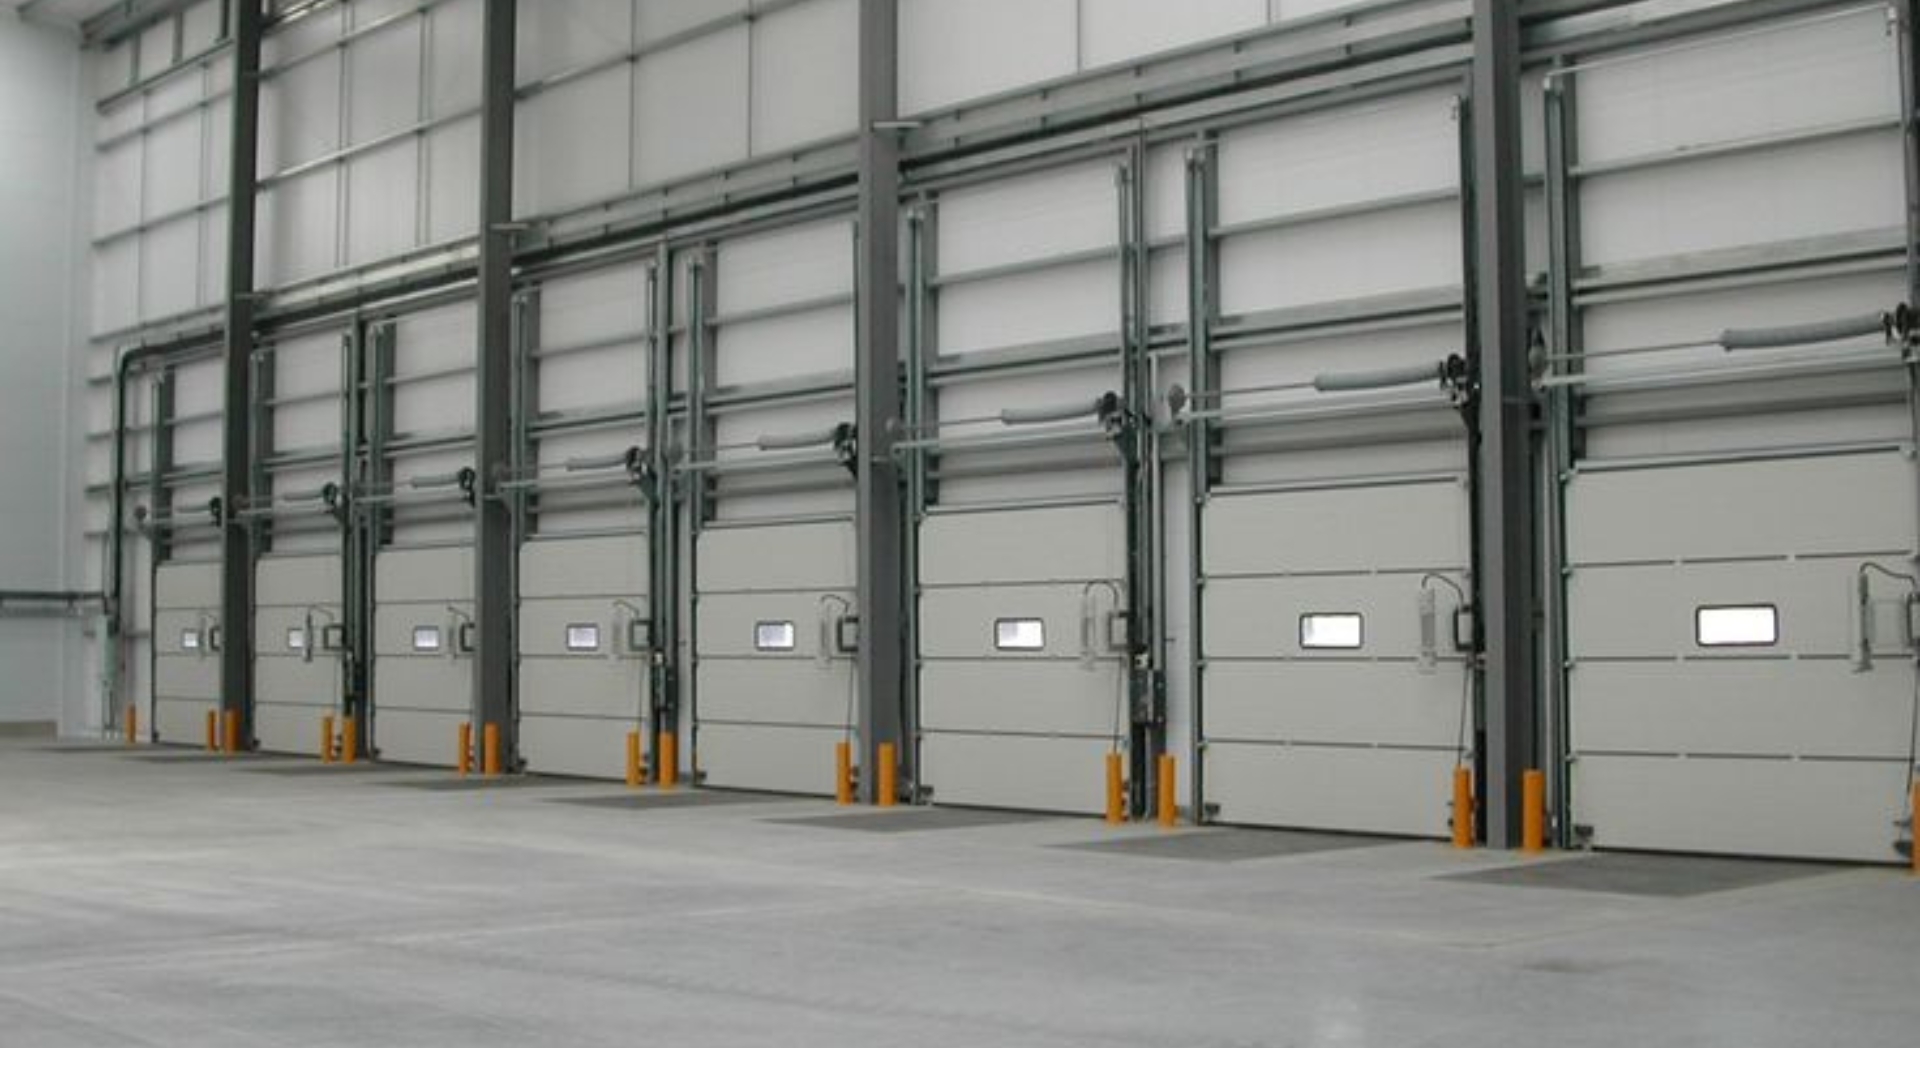 High-speed industrial garage doors